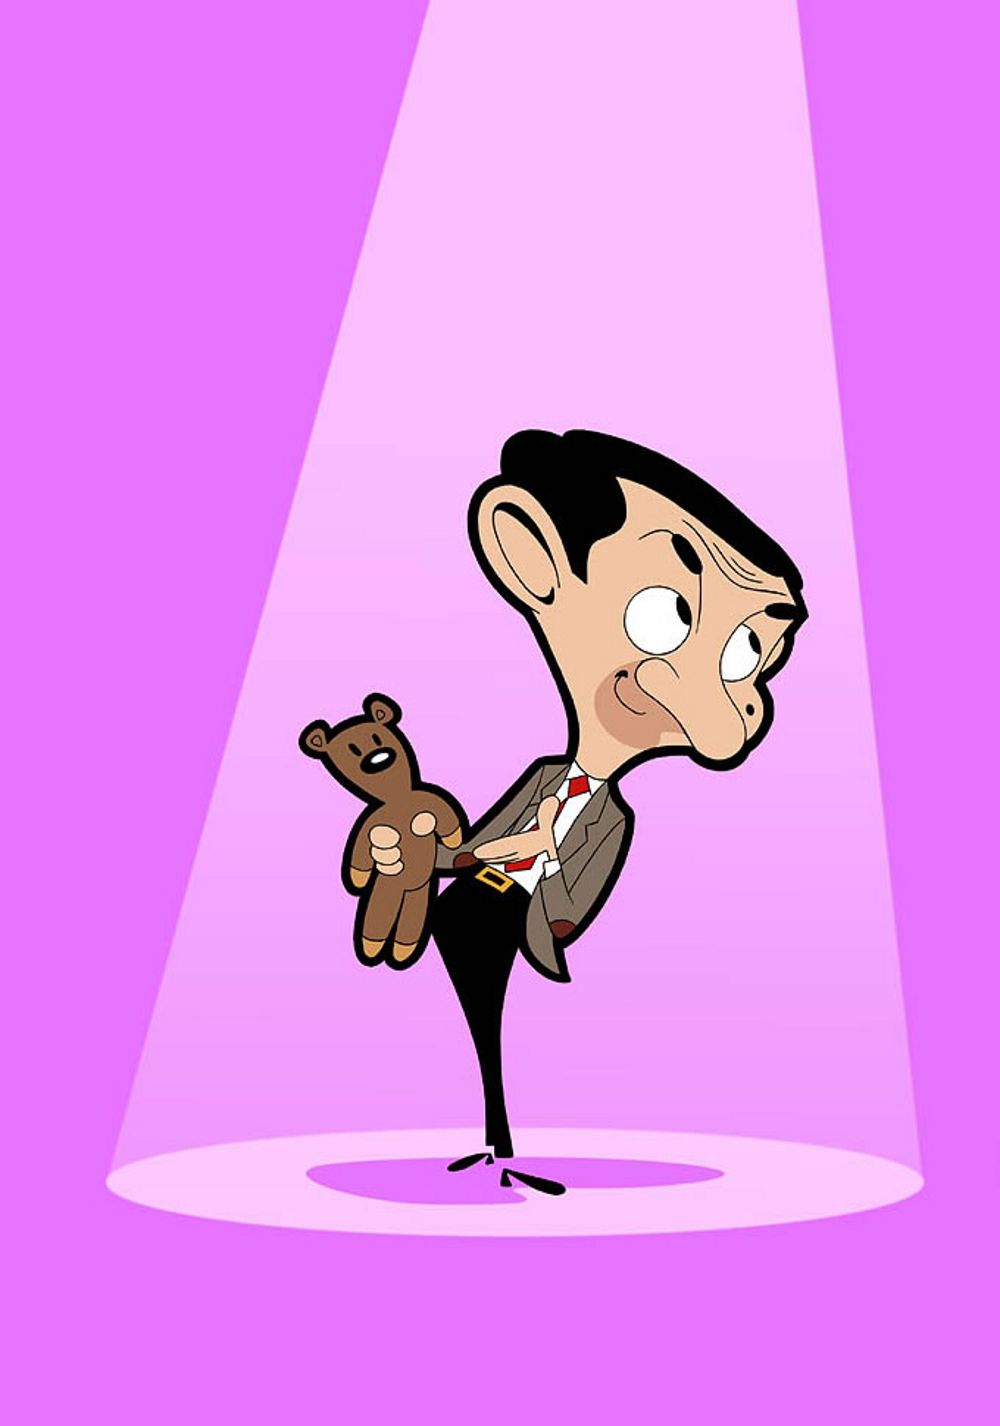 Full Mr Bean Cartoon , HD Wallpaper & Backgrounds